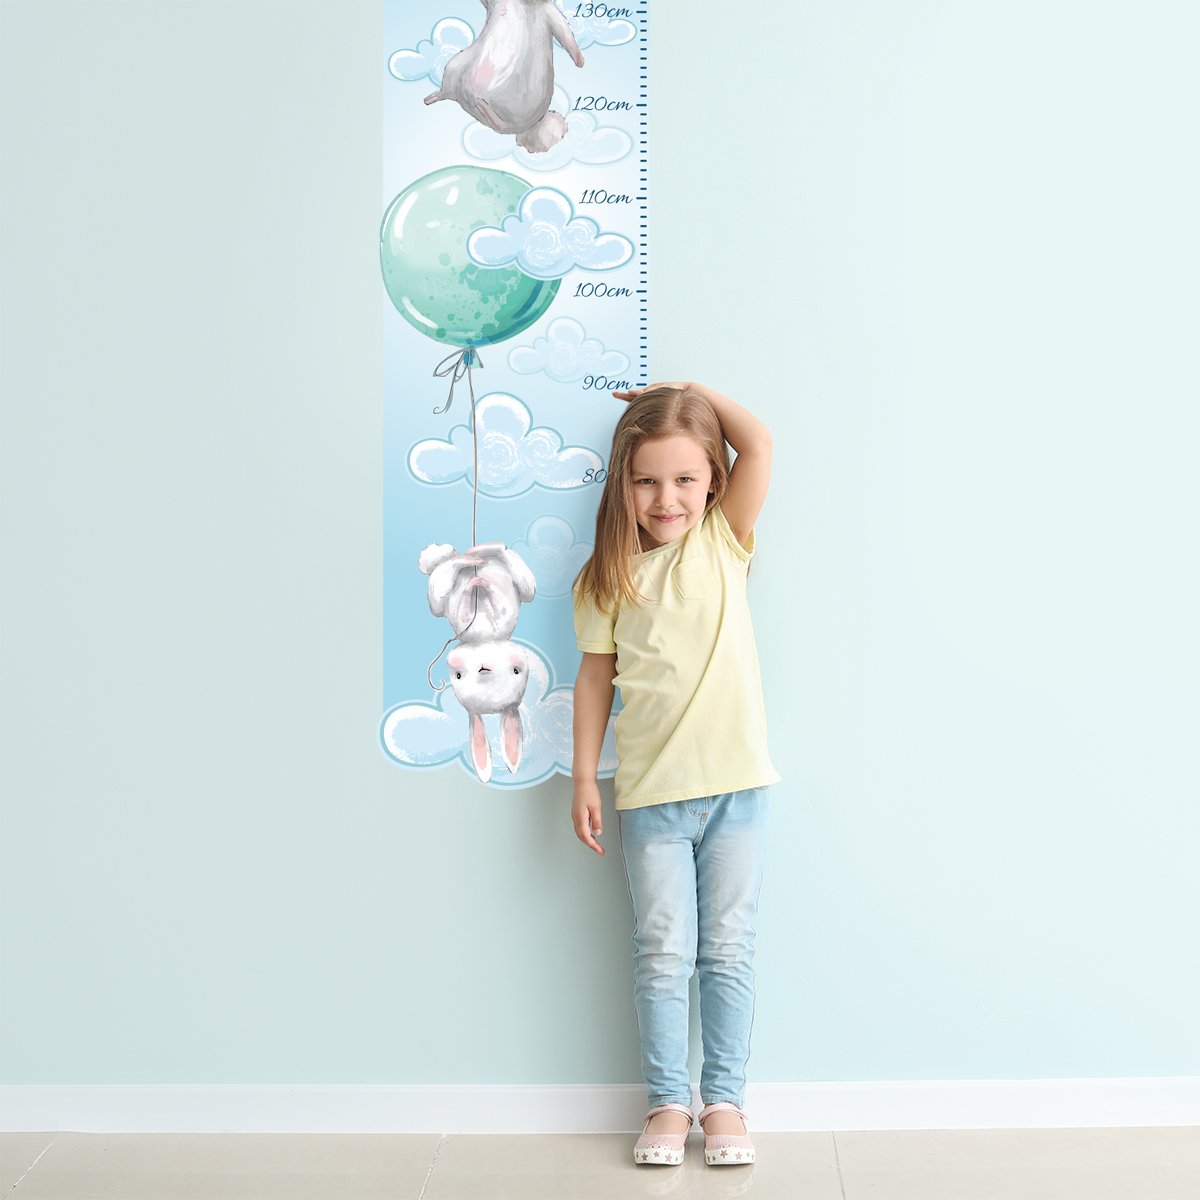 Naklejka na ścianę miarka wzrostu - króliki i balony#kolor_mietowy